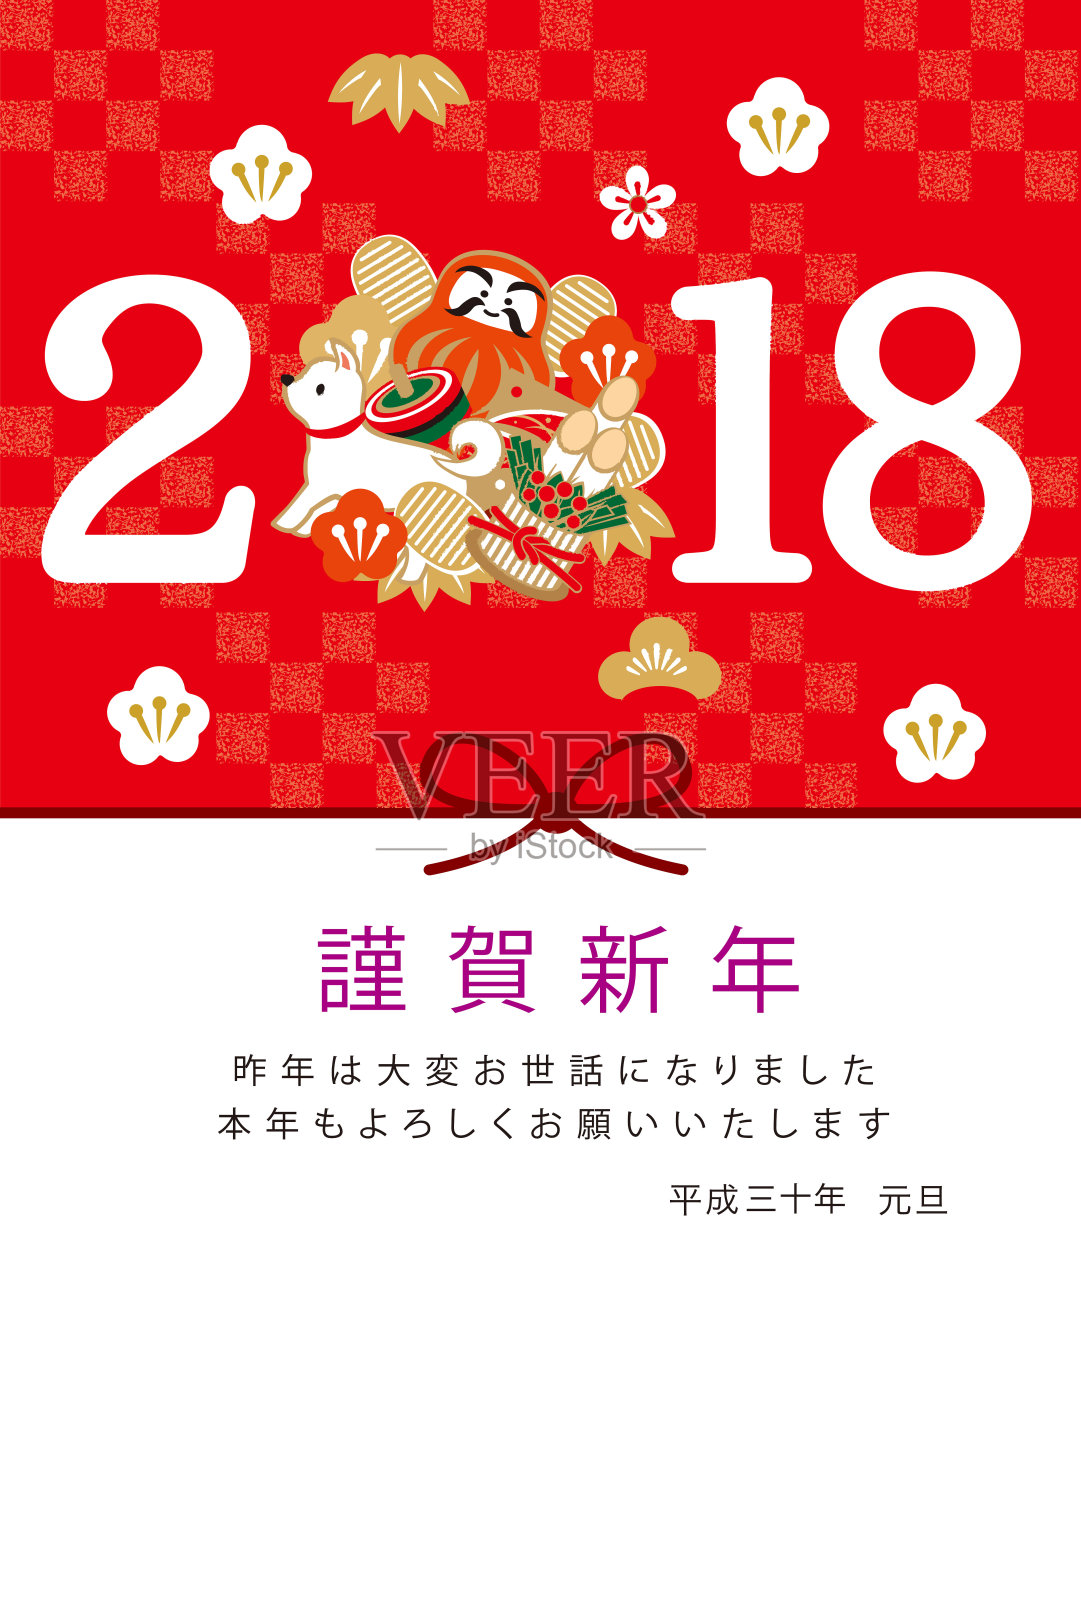 2018年日本印刷工艺新年贺卡插画图片素材